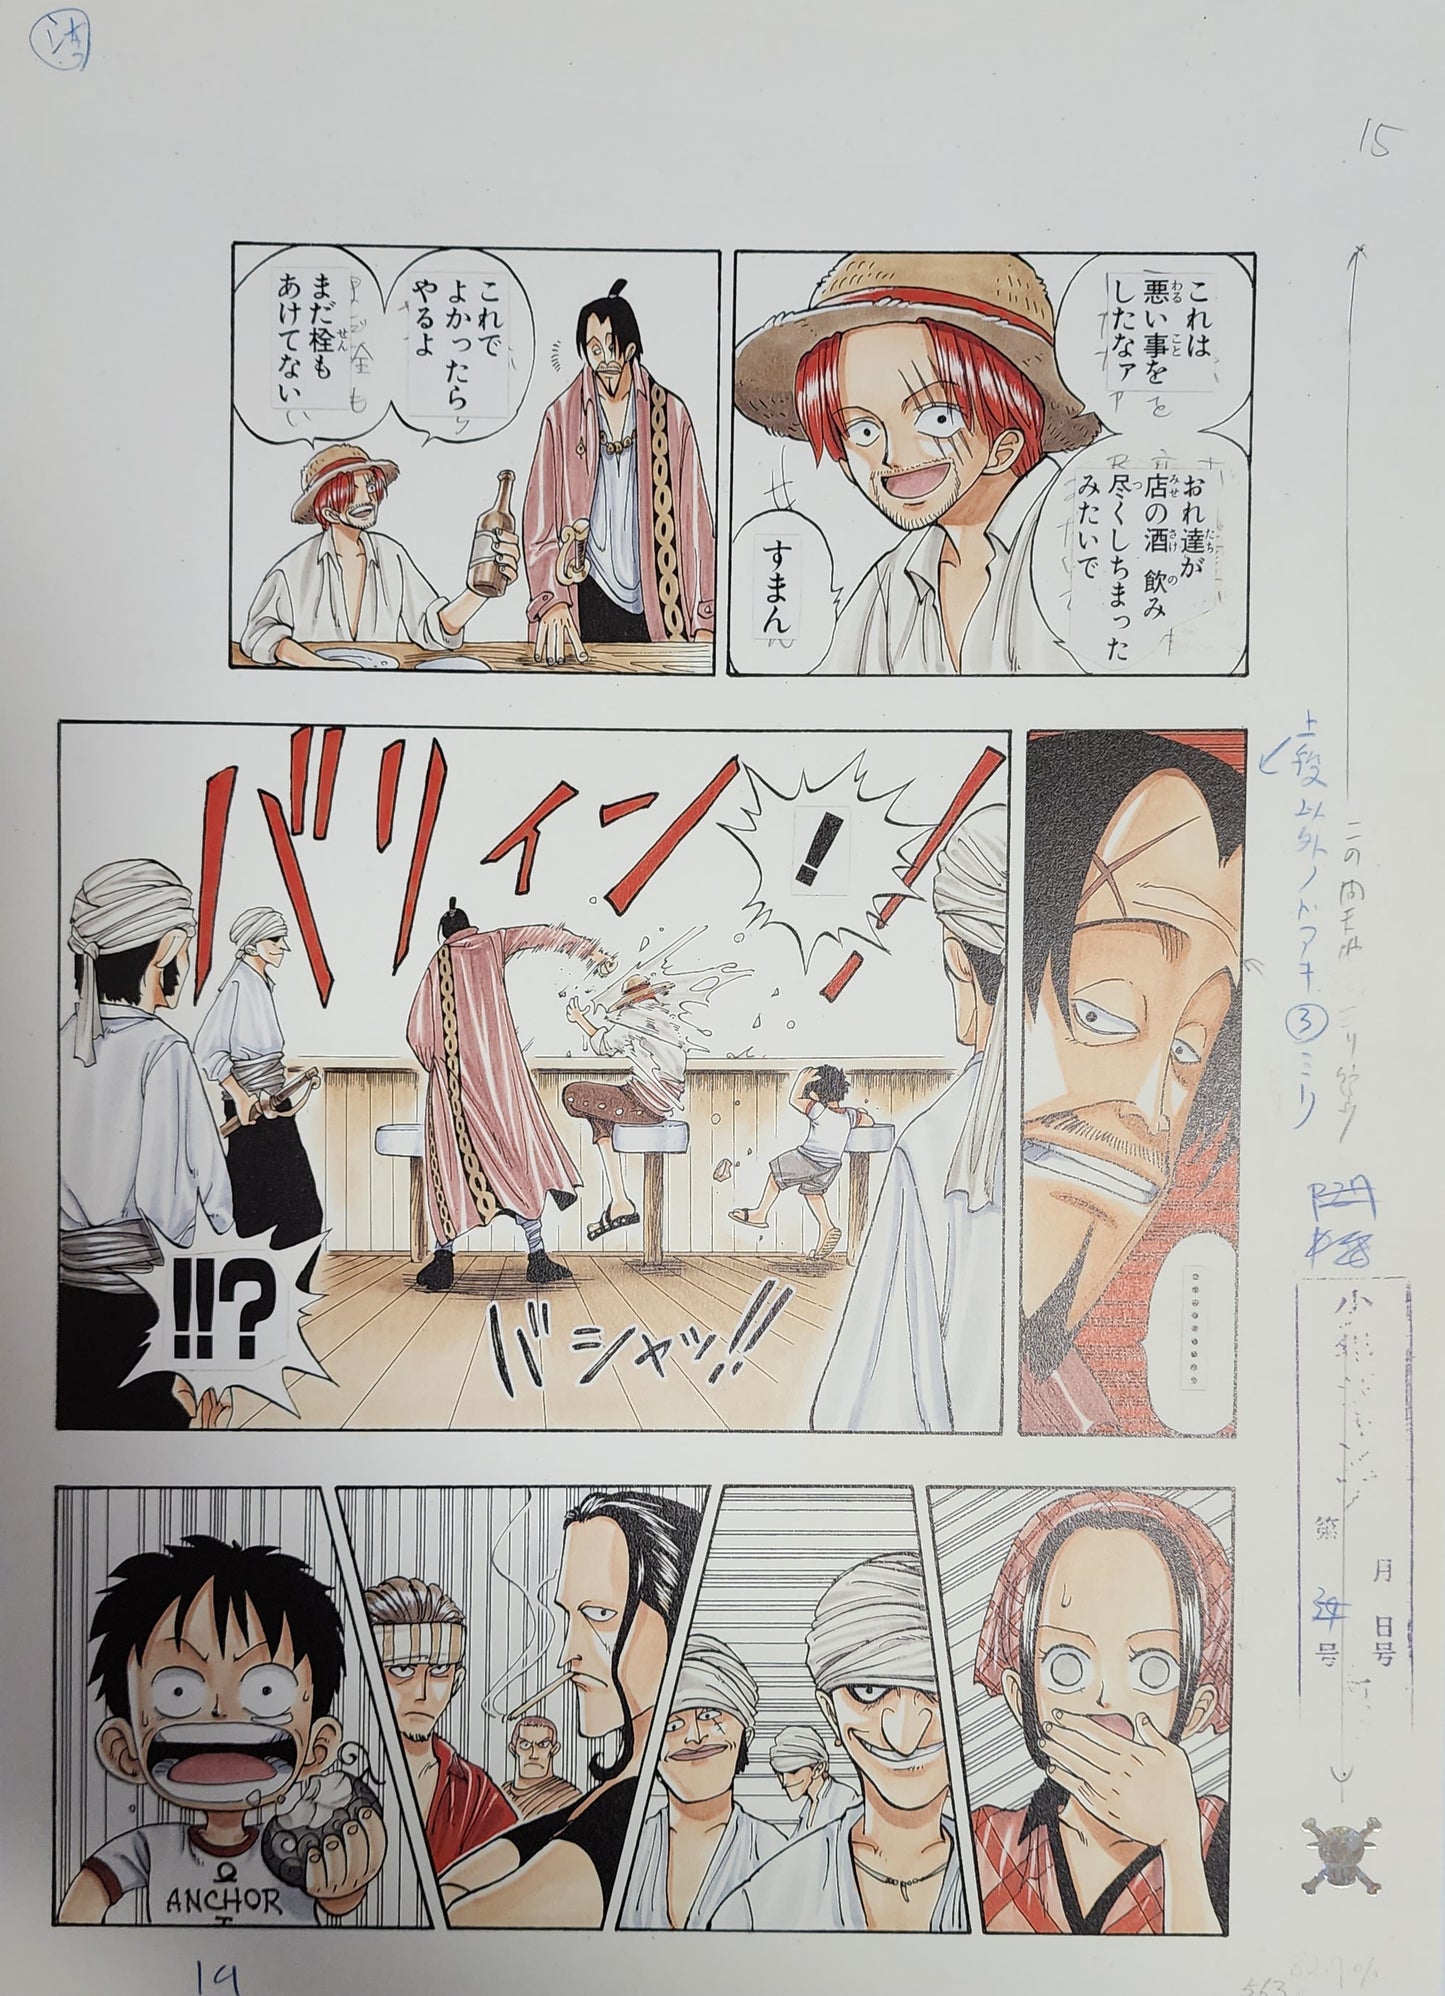 Romance Dawn: A CG Tribute to One Piece - One Piece